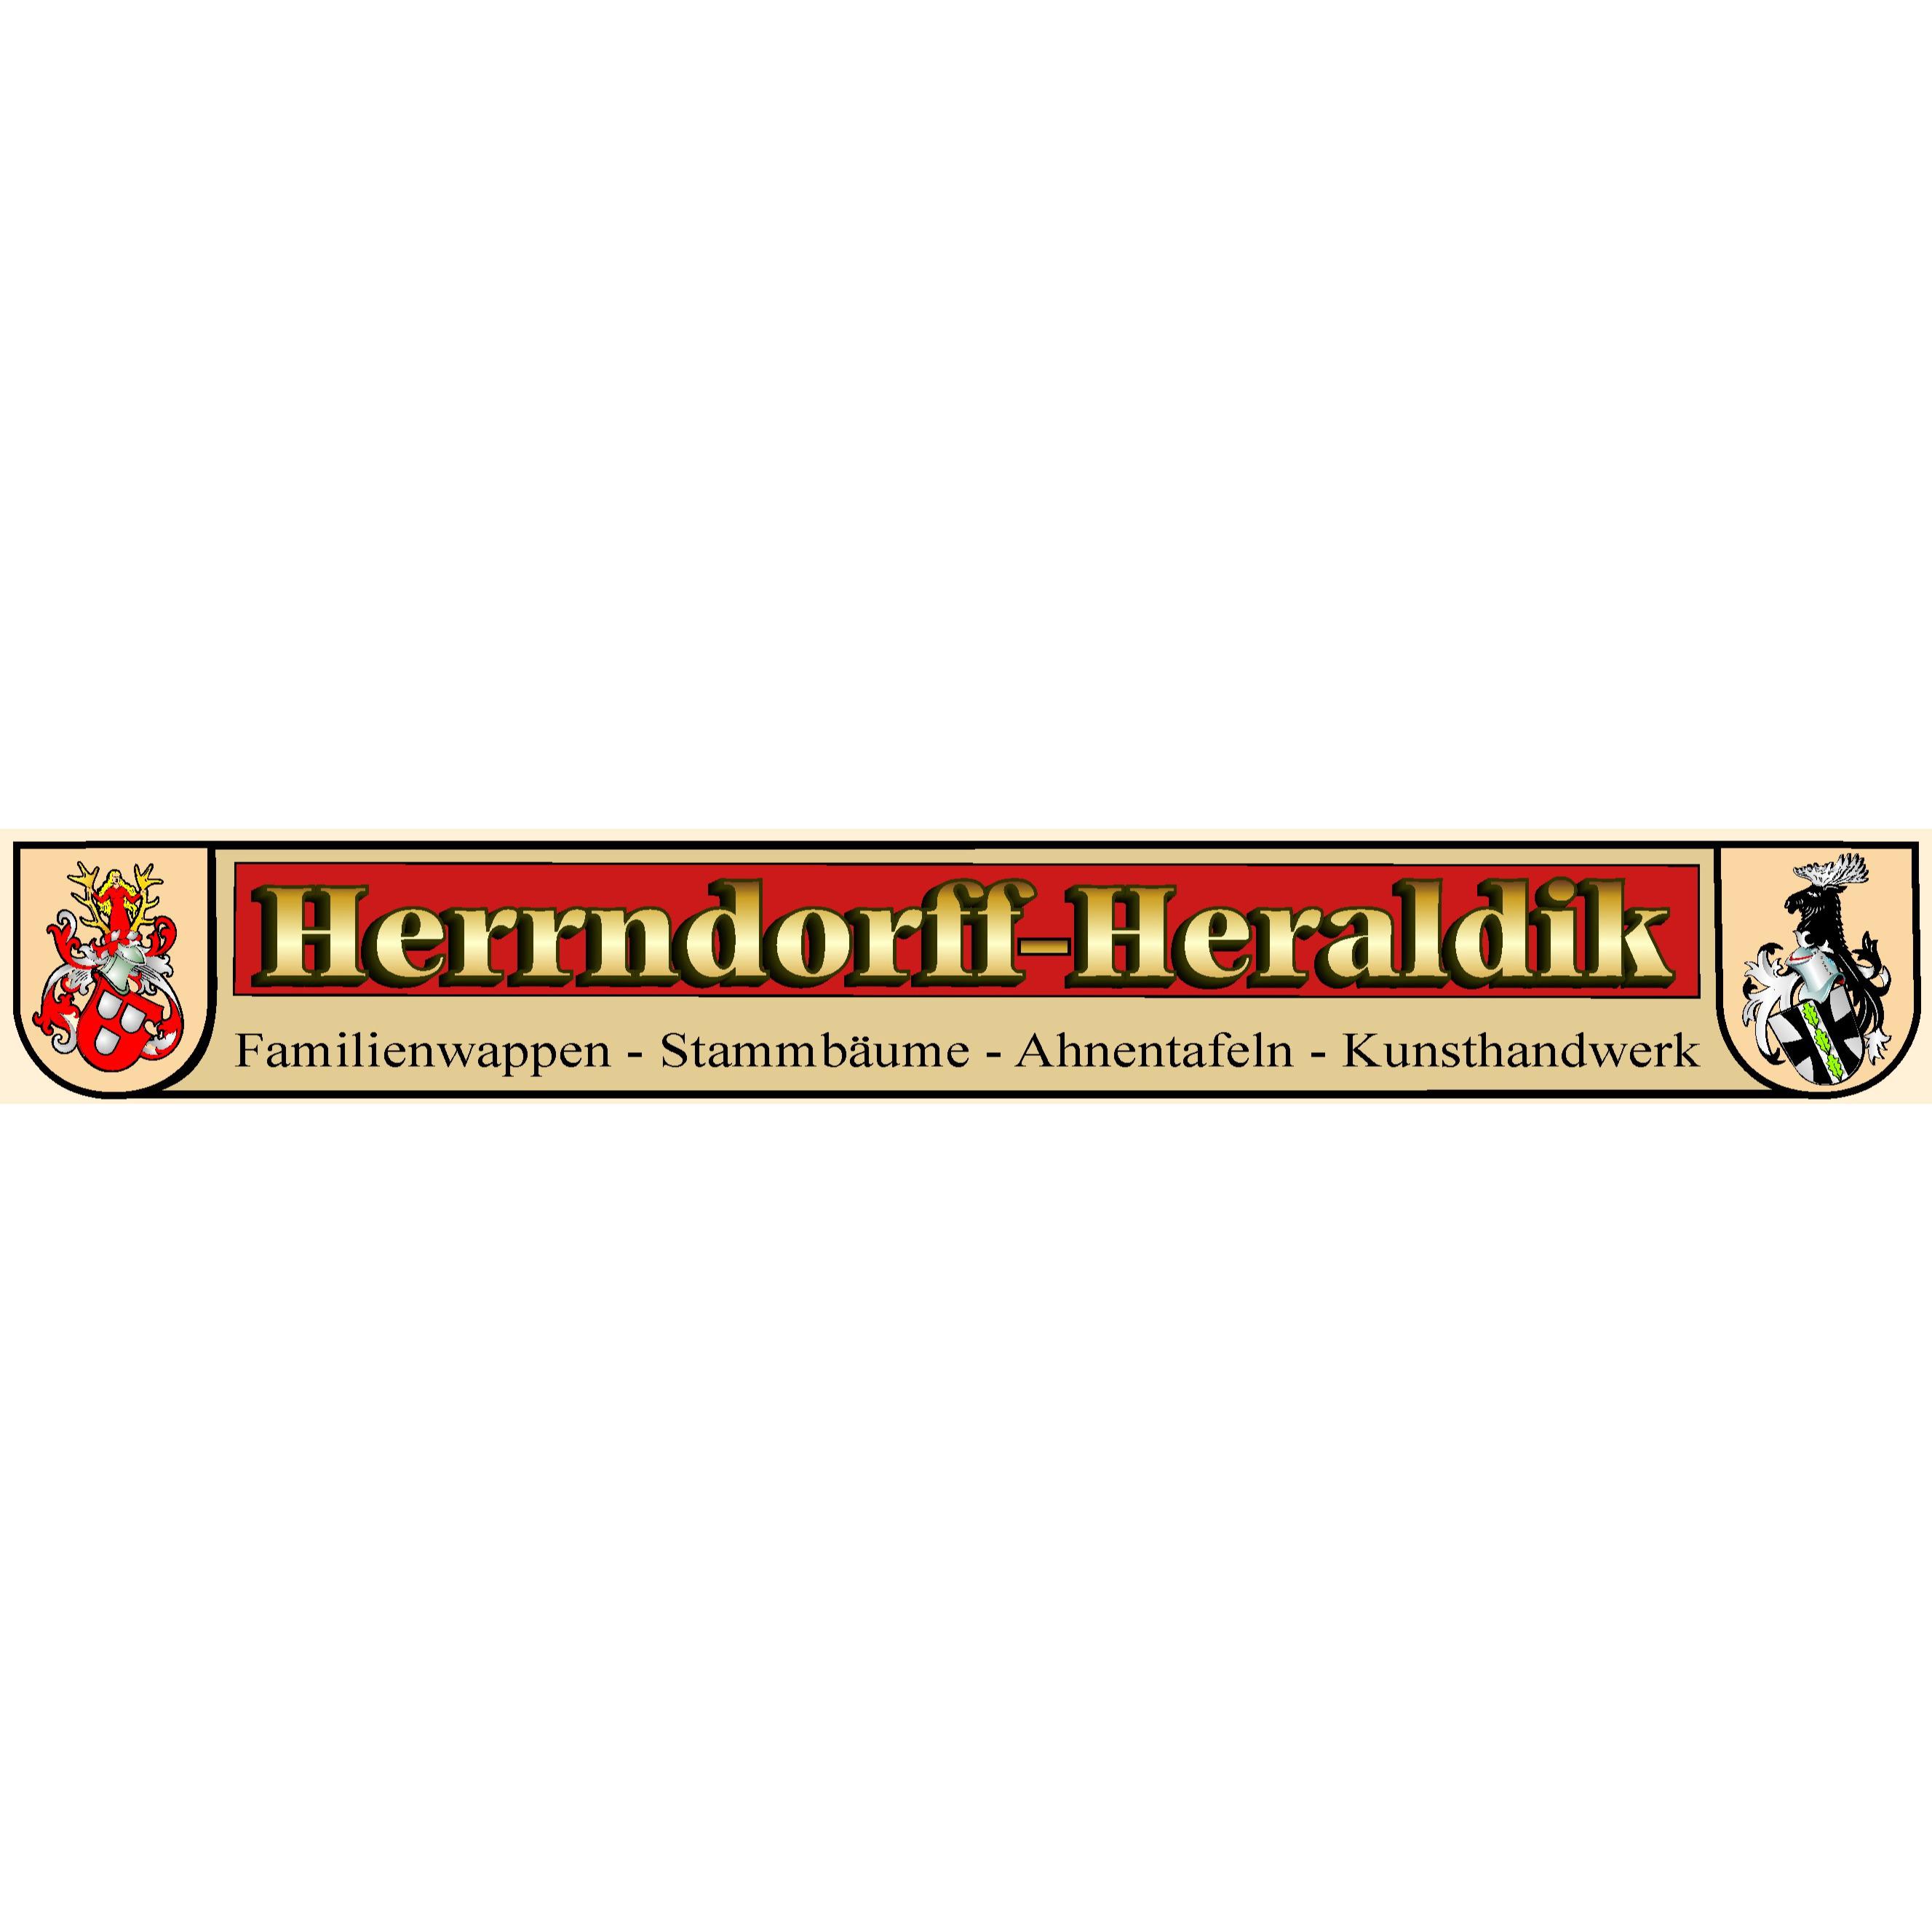 Herrndorff-Heraldik e.K. Inh.: Elmar Siemssen  